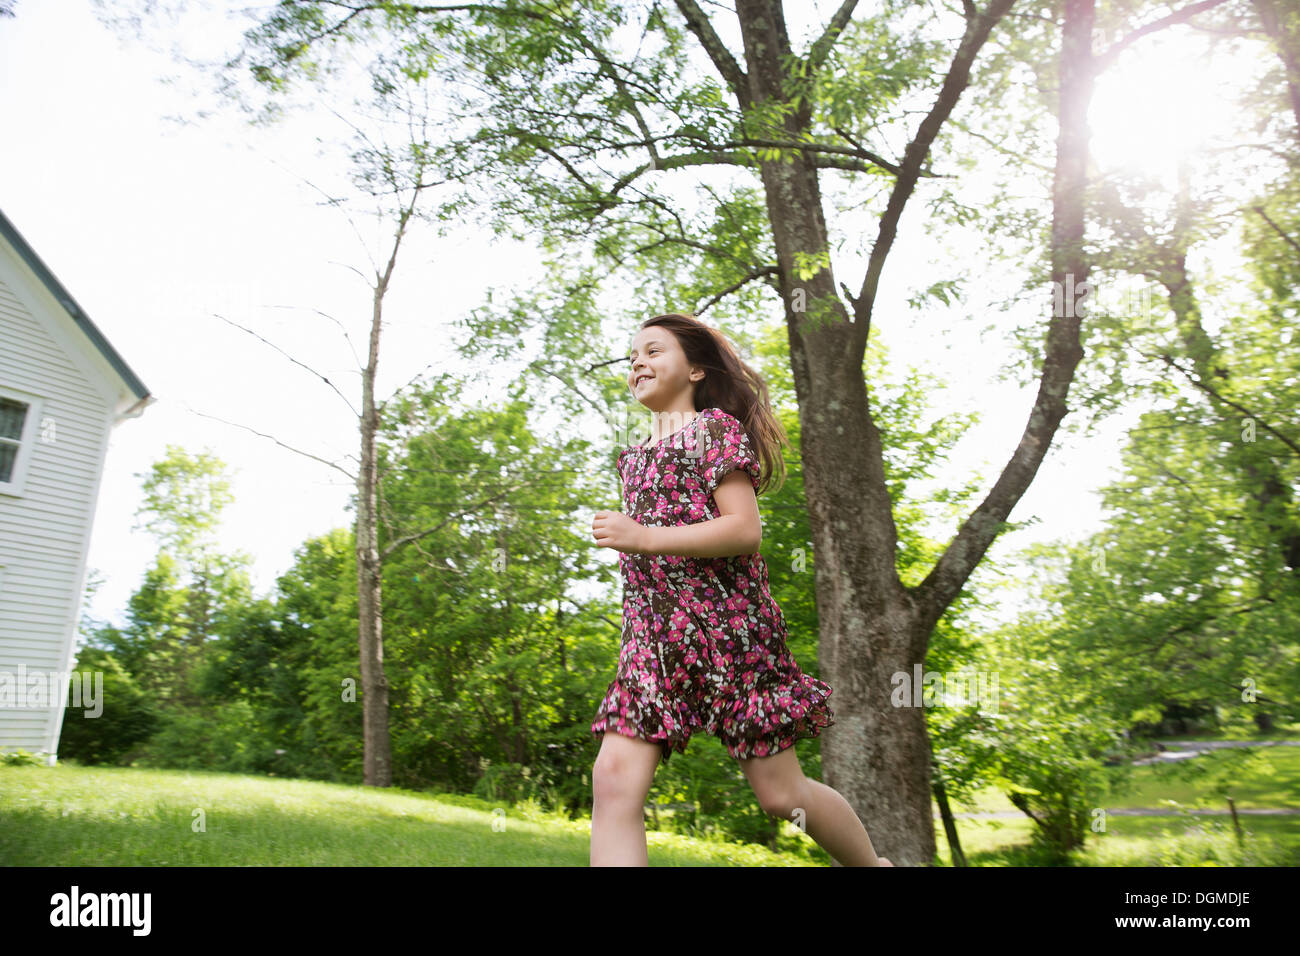 Une jeune fille dans une robe à motifs, courir sur l'herbe à l'ombre des arbres dans un jardin de ferme. Banque D'Images